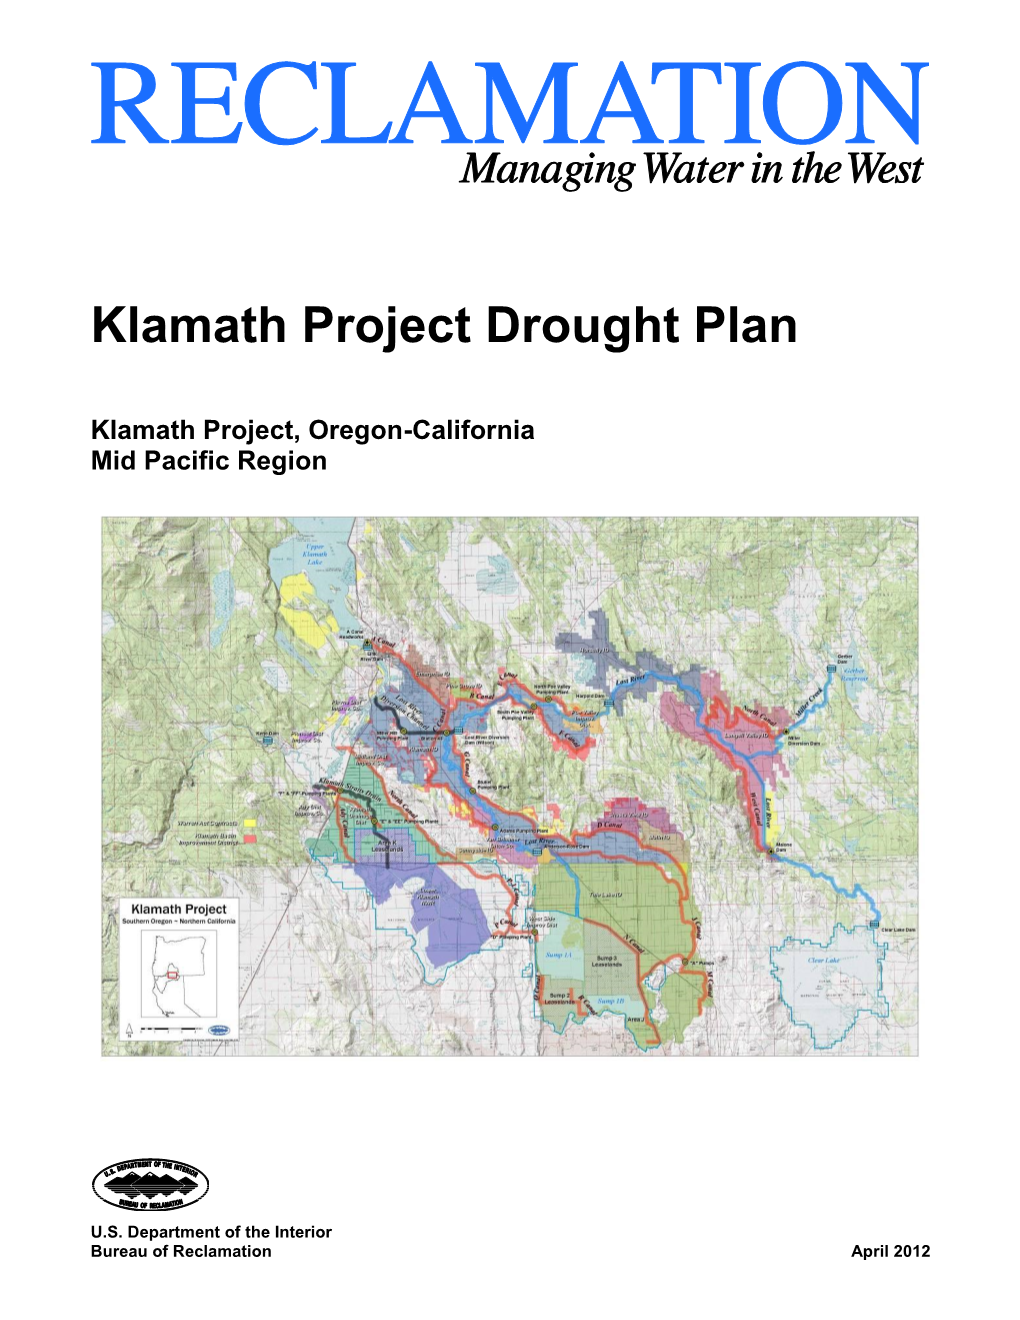 Klamath Project Drought Plan